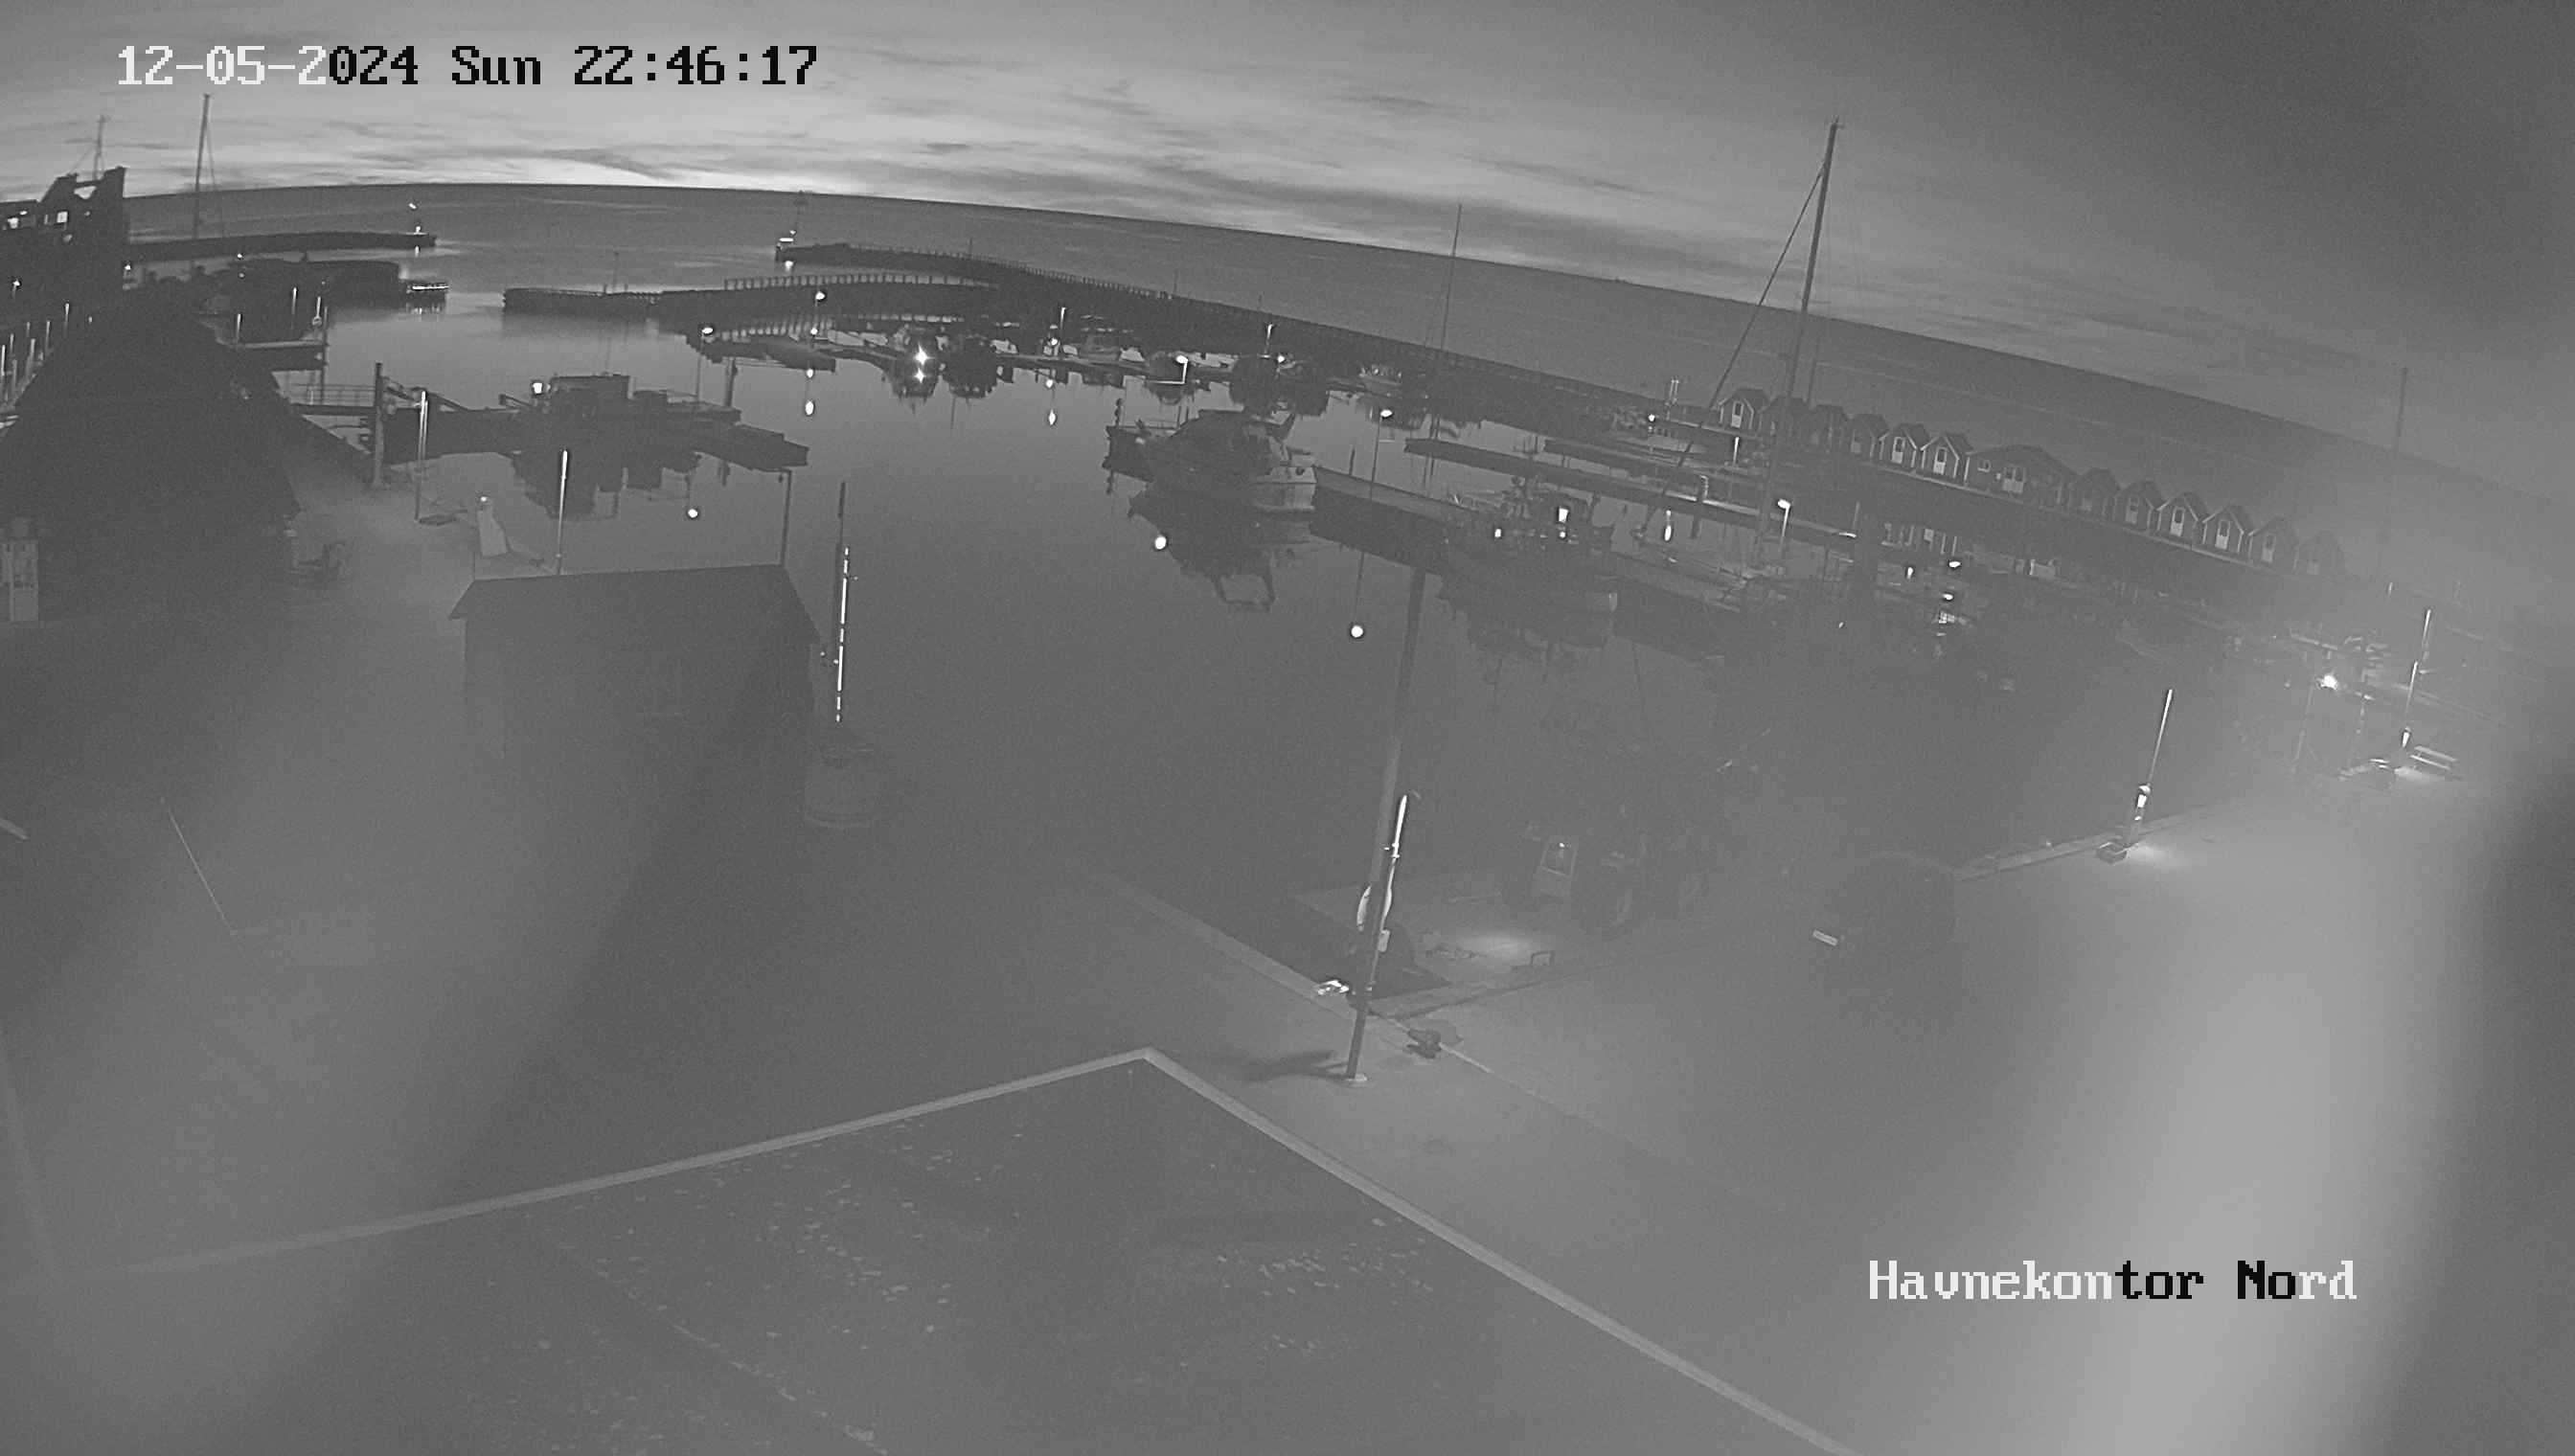 Vesterø Havn (Læsø) Thu. 22:47